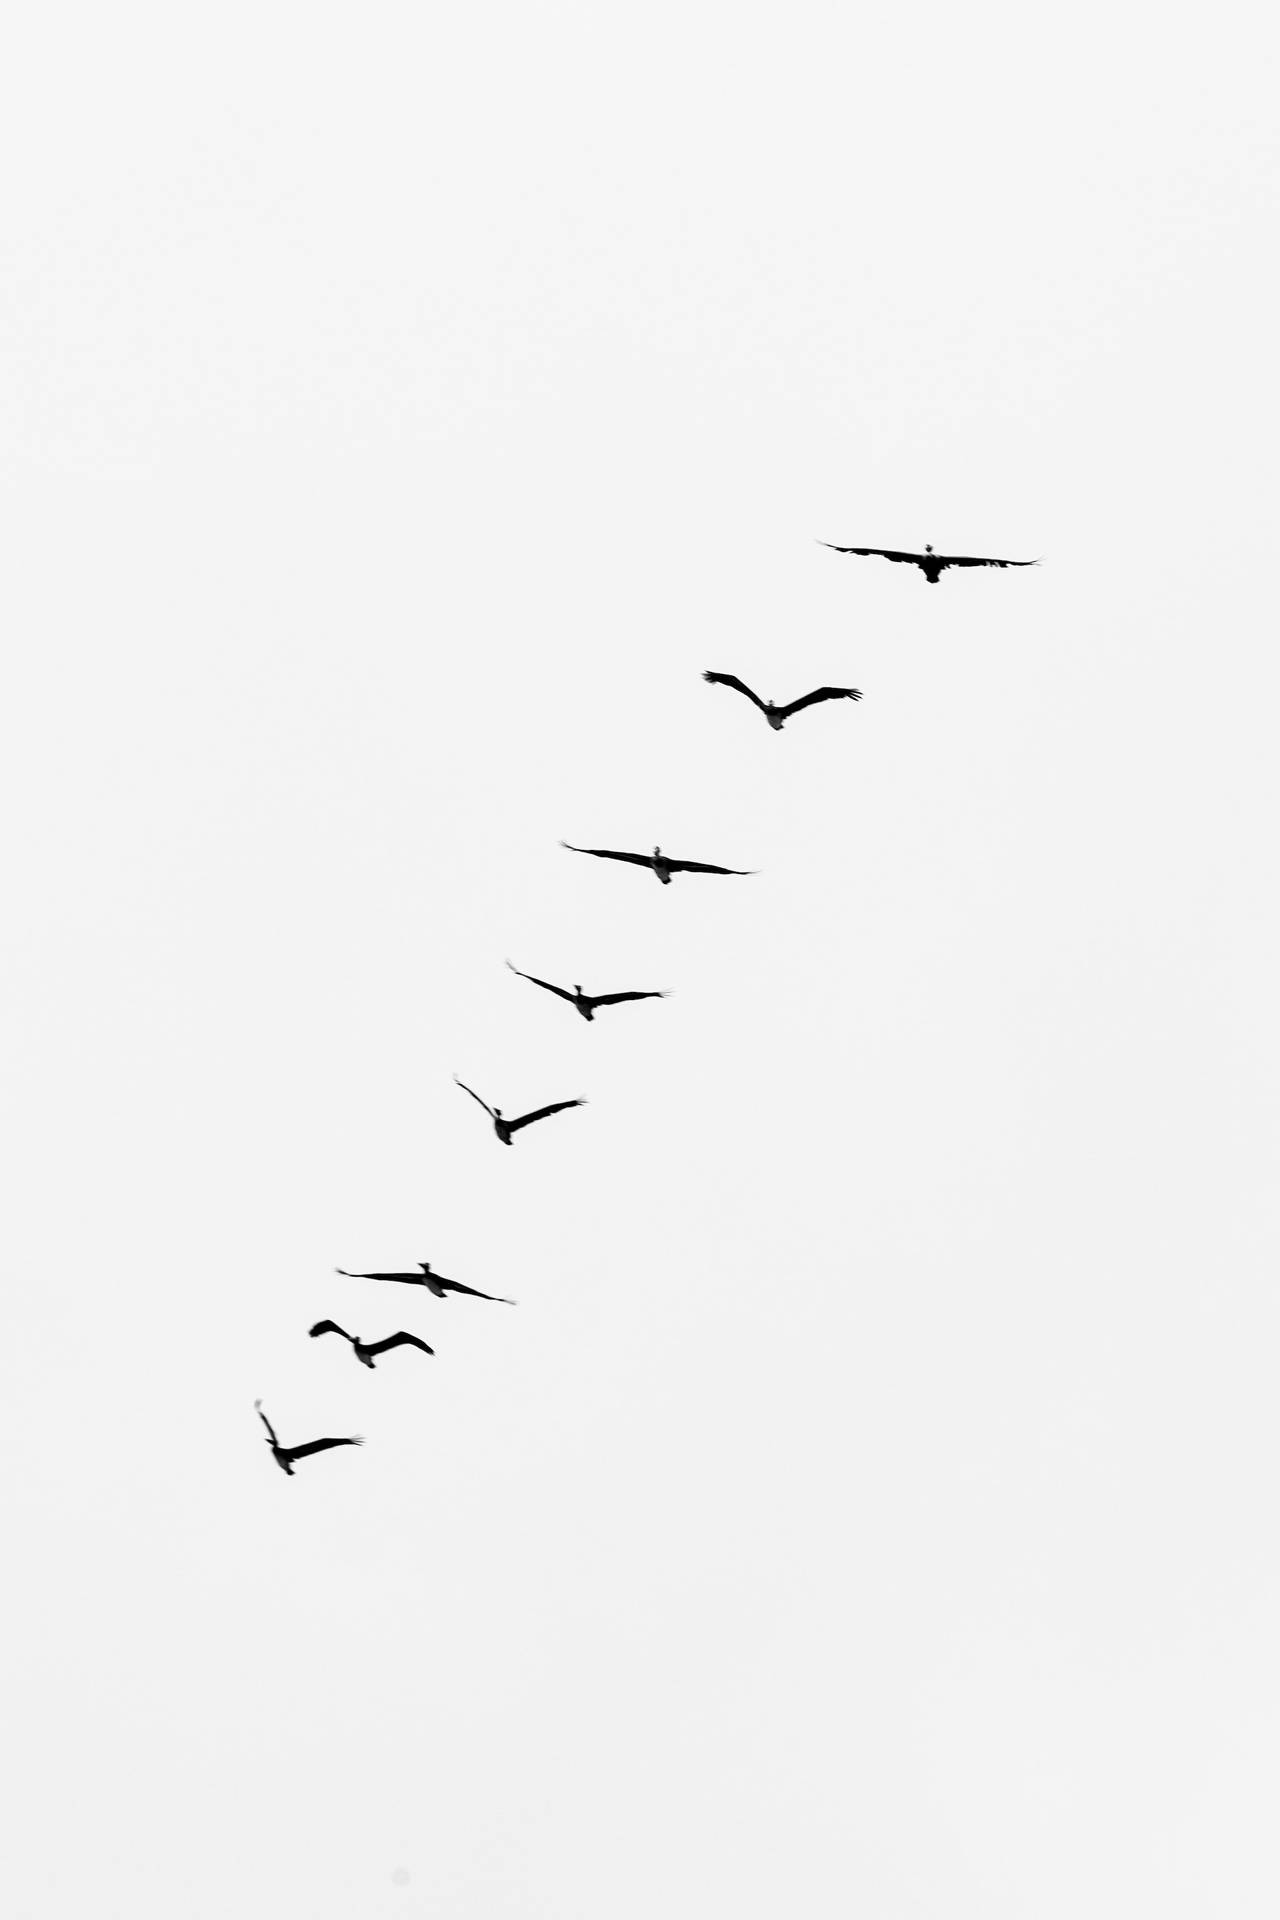 Pájarosvolando En Línea Recta. Fondo de pantalla